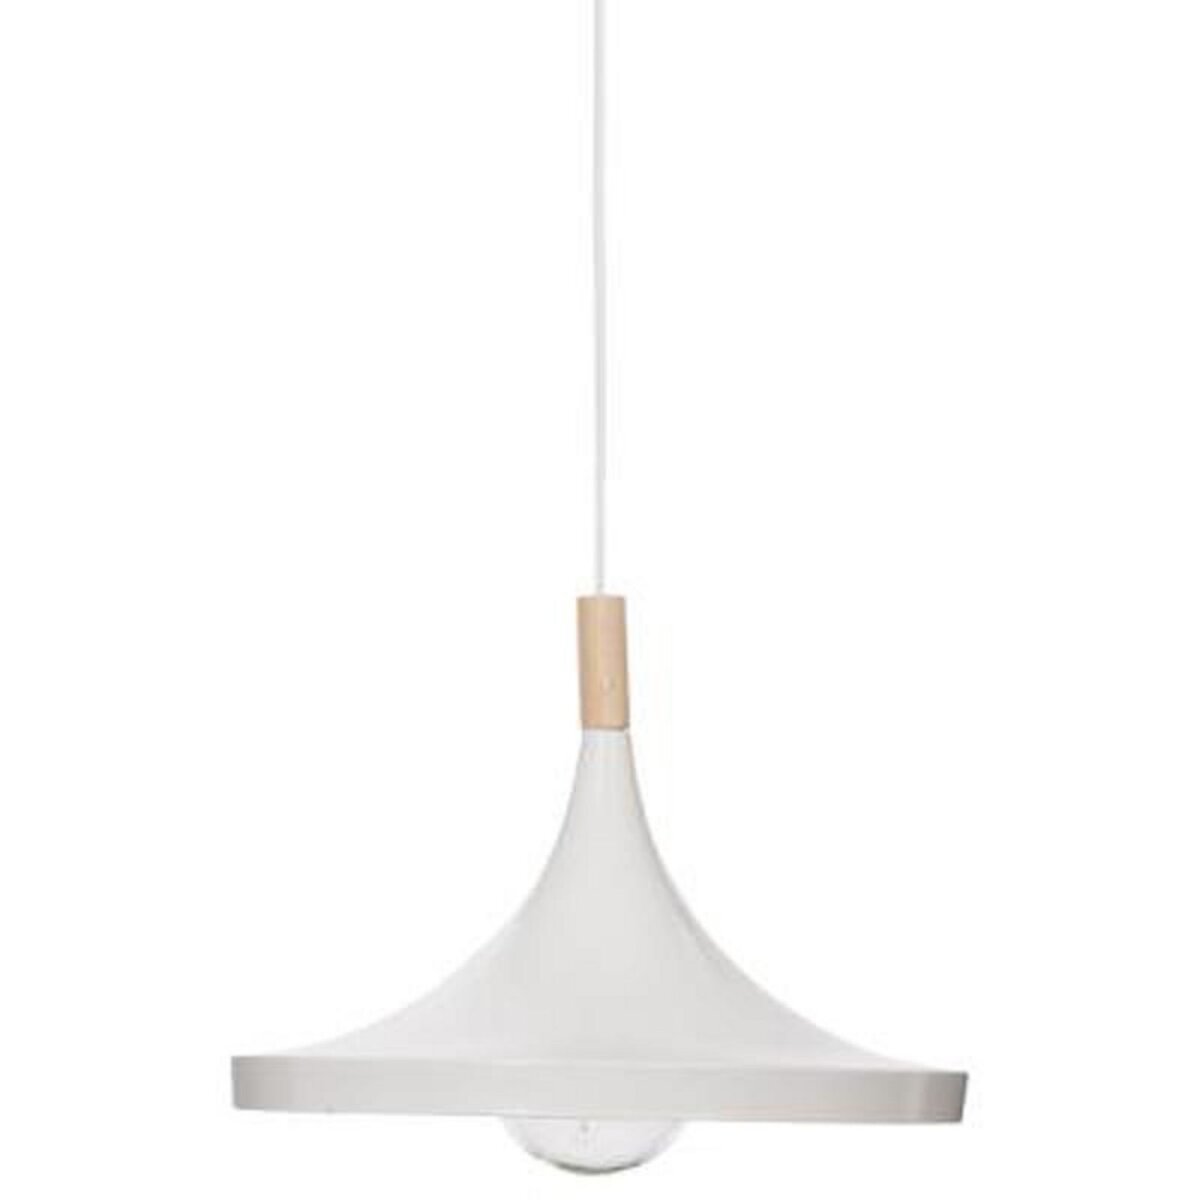  Lampe Suspension Design  Métal & Bois  32cm Blanc